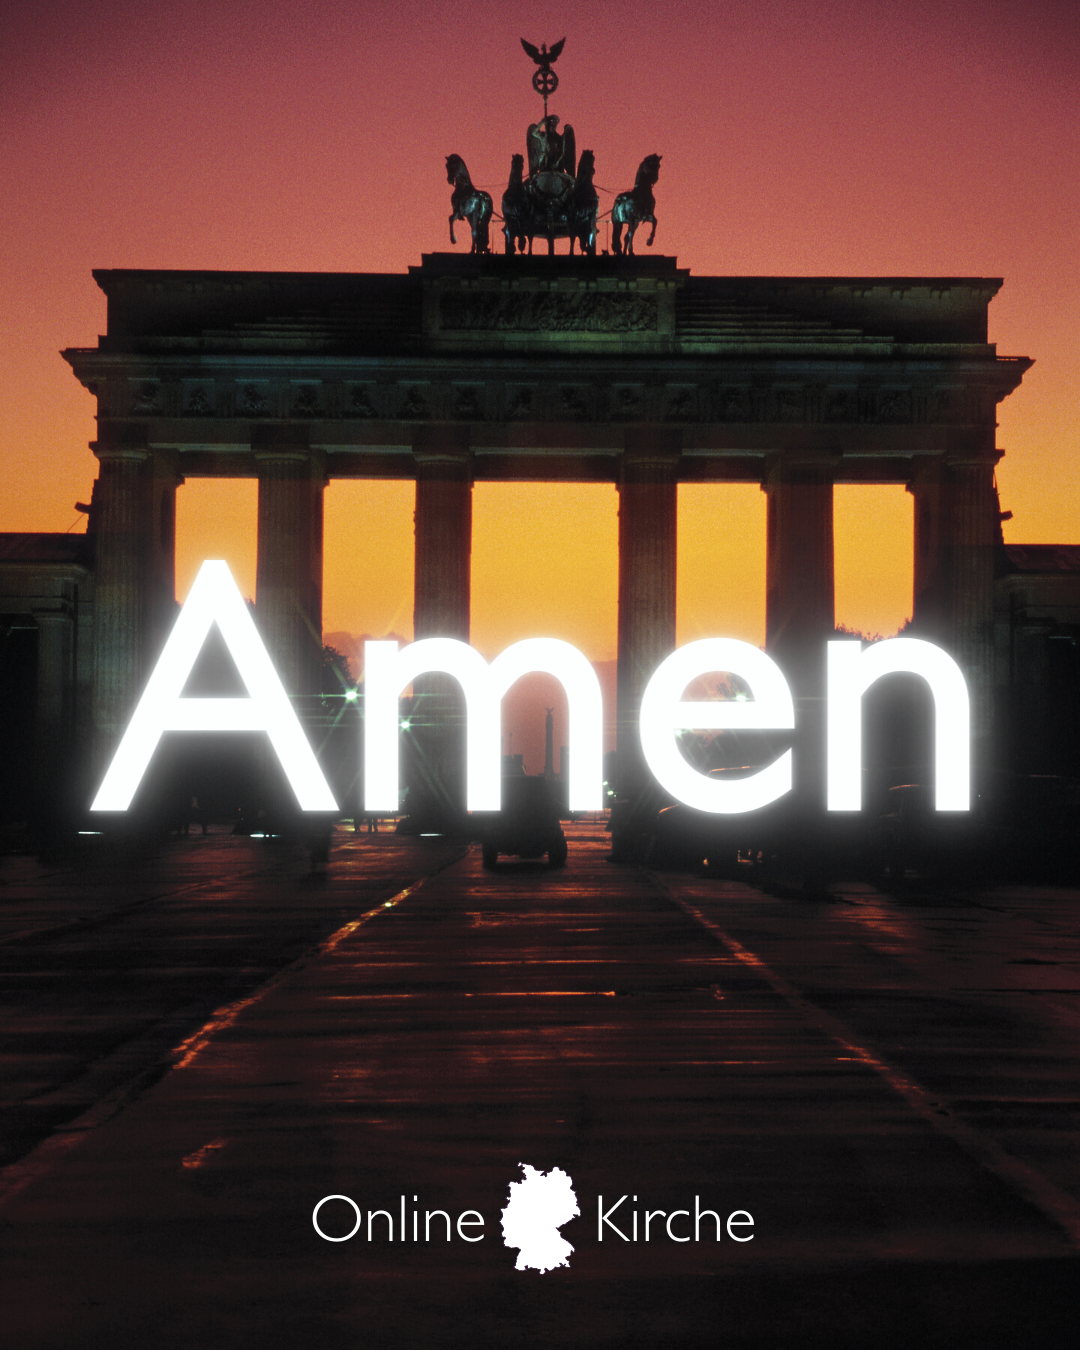 Zu sehen ist das Brandenburger Tor im Sonnenaufgang. Davor steht in leuchtenden Lettern "Amen".